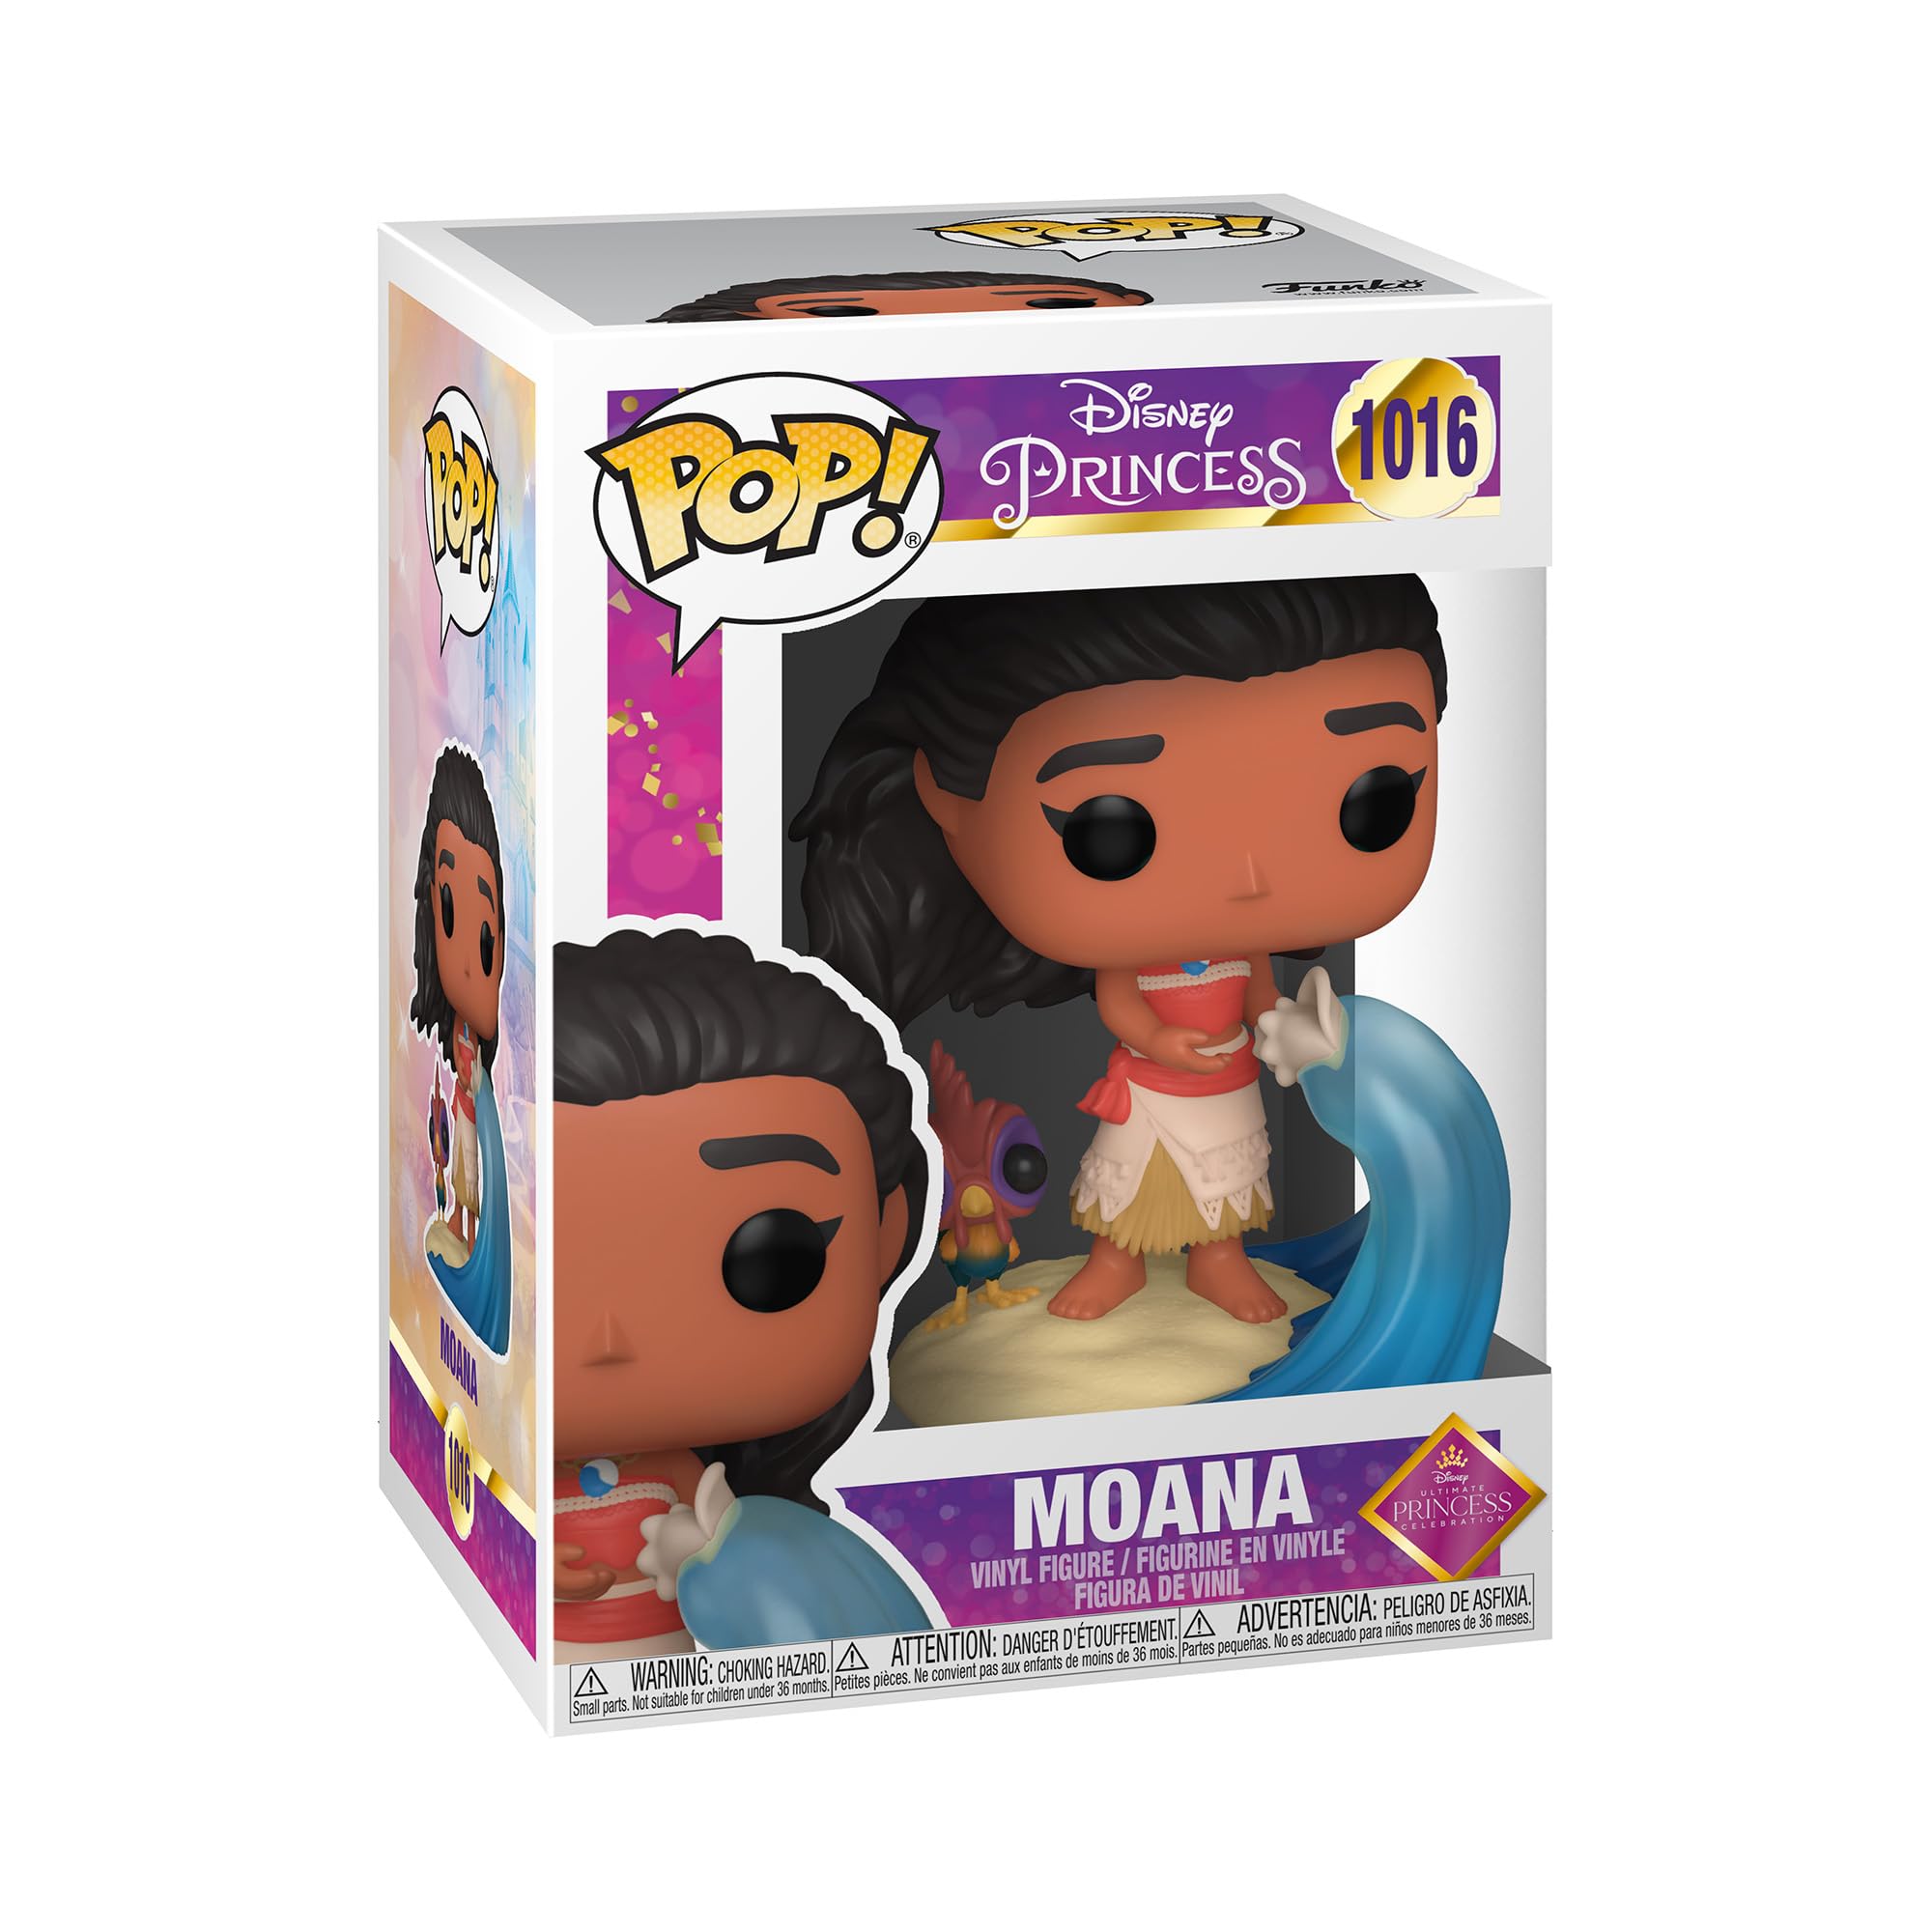 POP Disney: Ultimate Princess - Moana, Multicolor